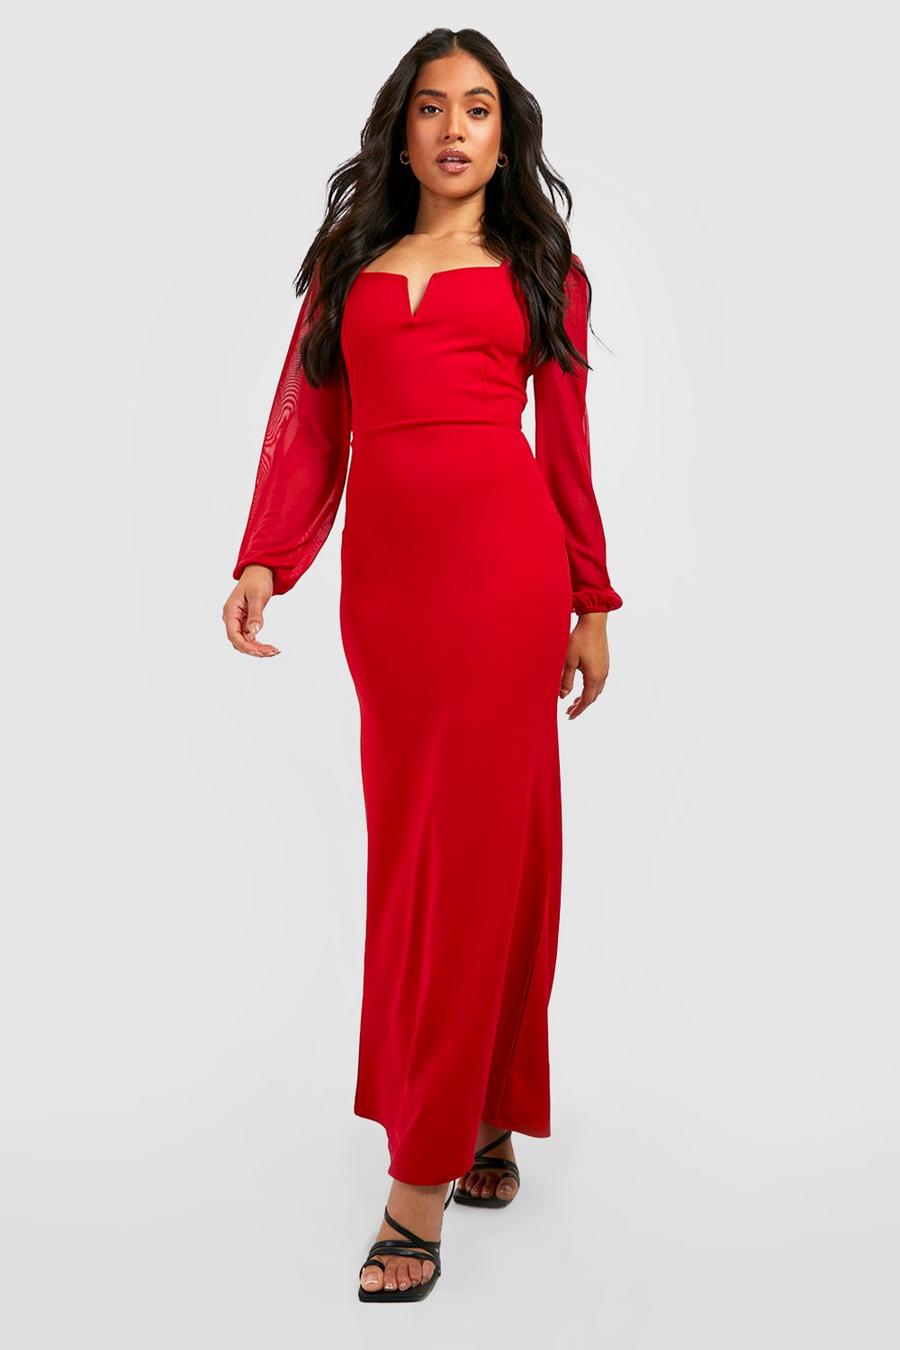 אדום rojo שמלת מקסי עם שרוולי בד רשת נפוחים ומוט V, פטיט